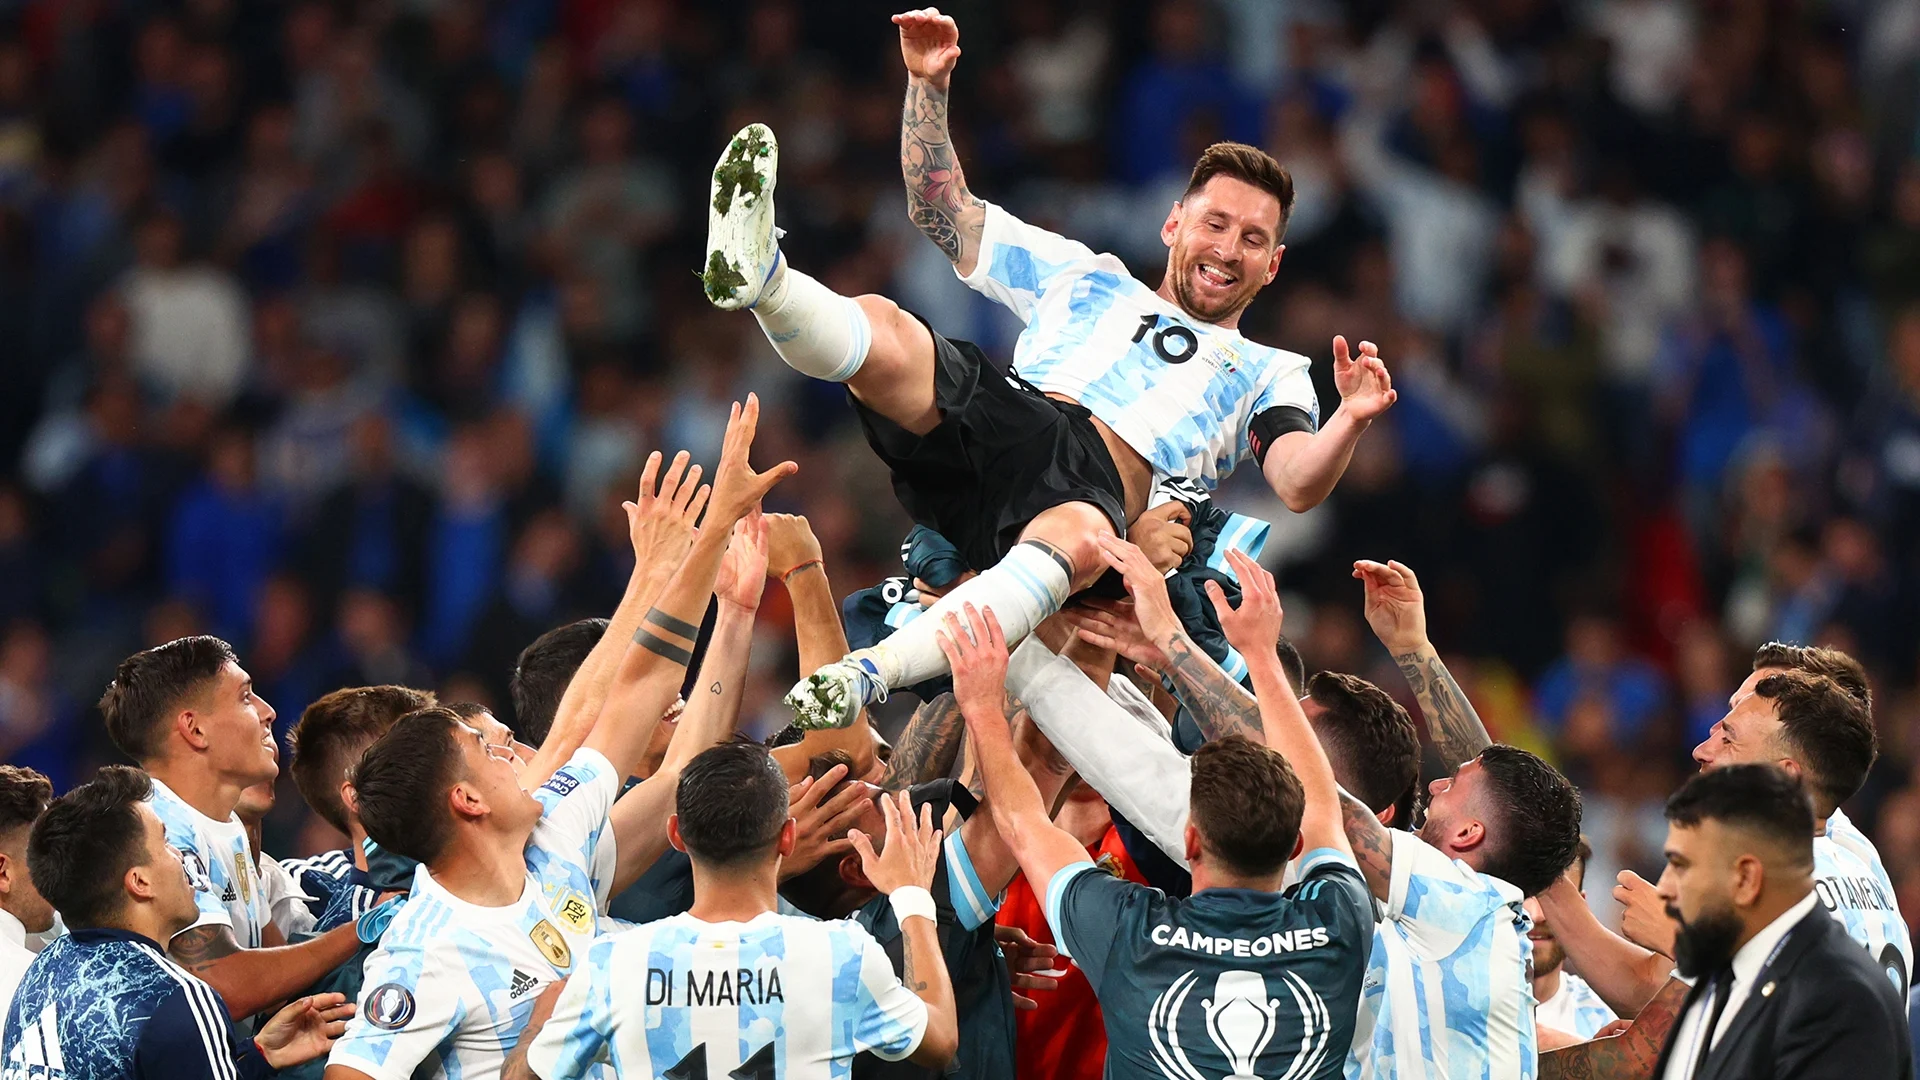 Messi Record: विश्व कप में मेसी के नाम अर्जेंटीना के लिए सबसे ज्यादा गोल, पेले की बराबरी से एक कदम दूर